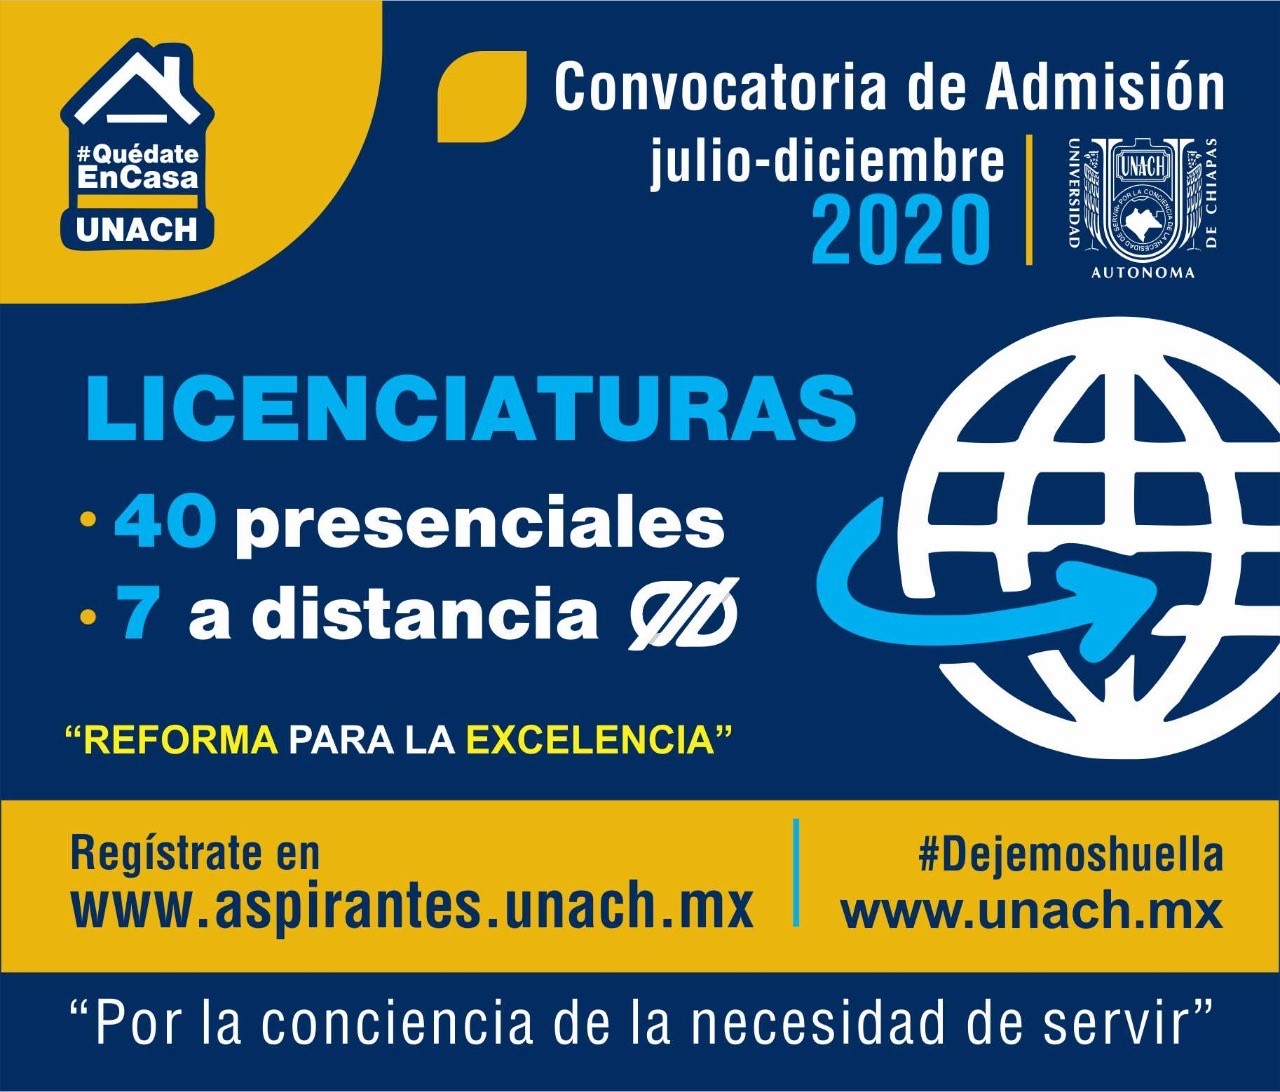 Lanza UNACH convocatoria para el examen de admisión del ciclo escolar julio-diciembre 2020